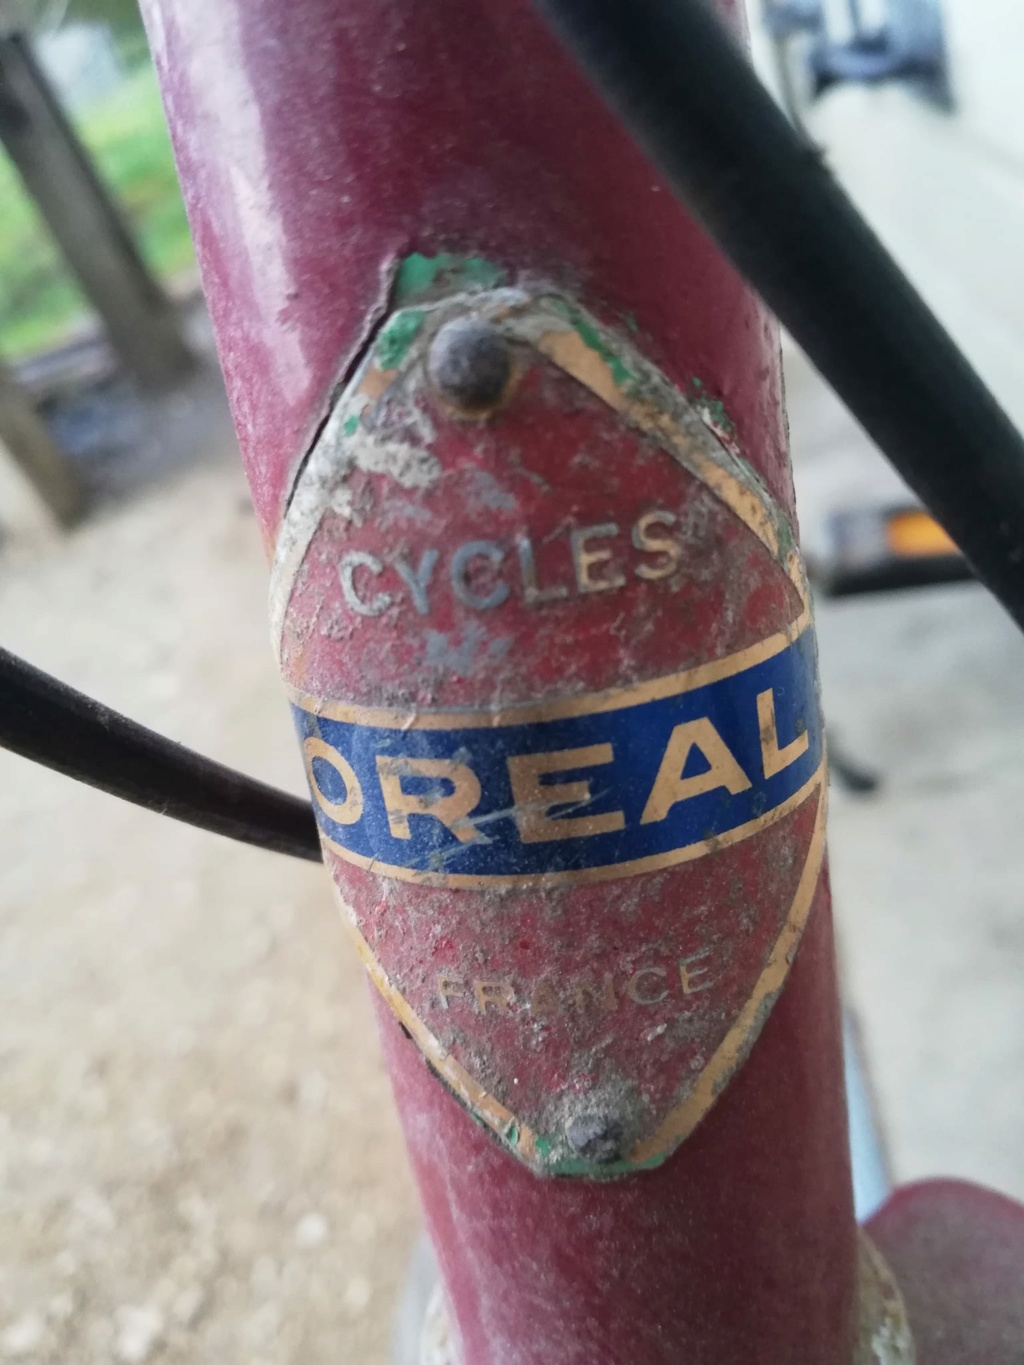 cycles - CYCLES OREAL FRANCE Oreal210